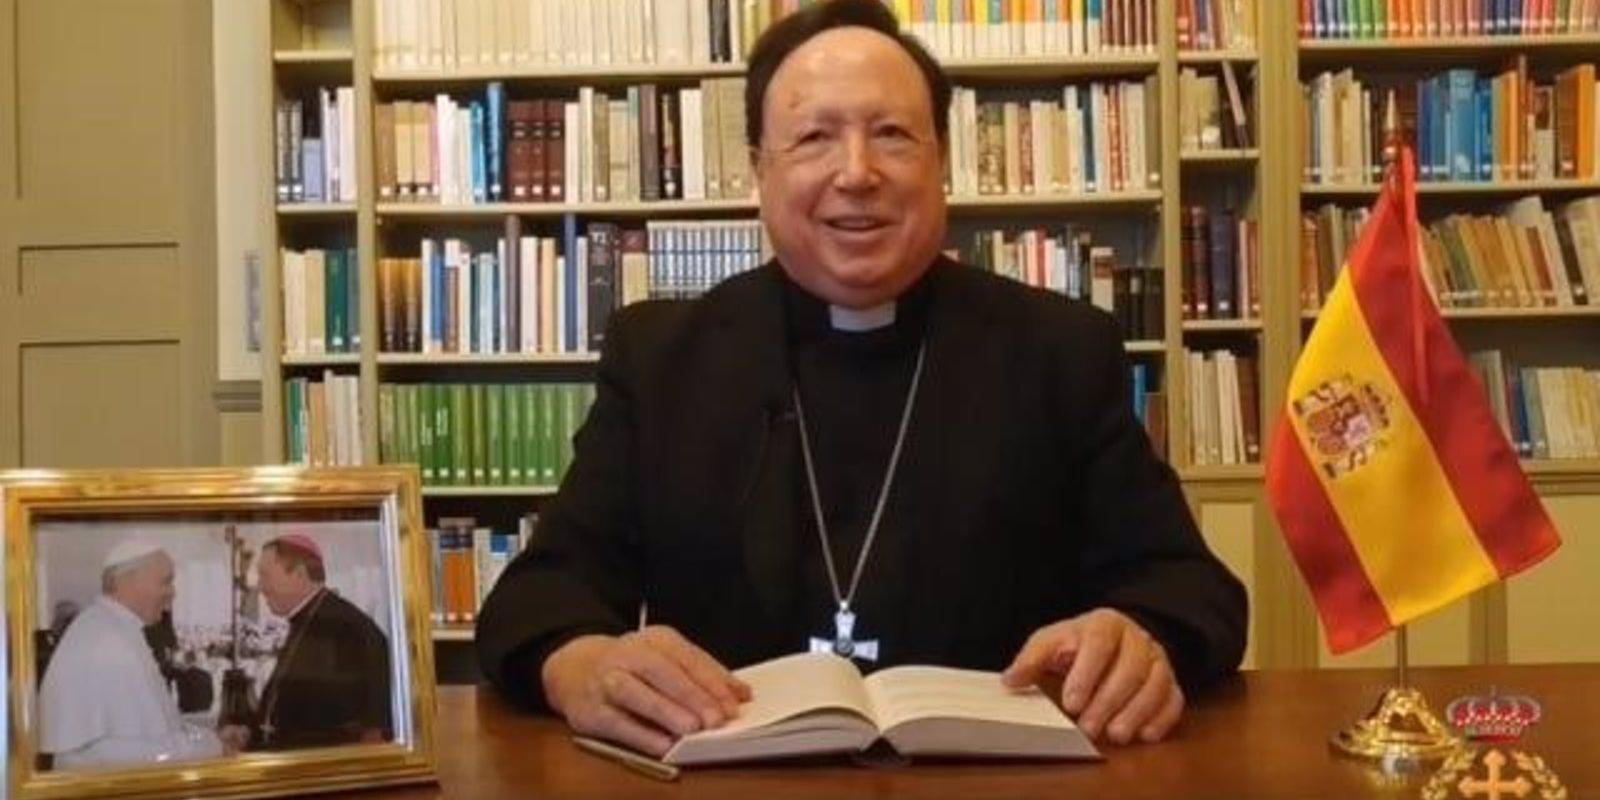 Fallece por Covid-19 el arzobispo castrense de España, Juan del Río, ingresado en el Gómez Ulla